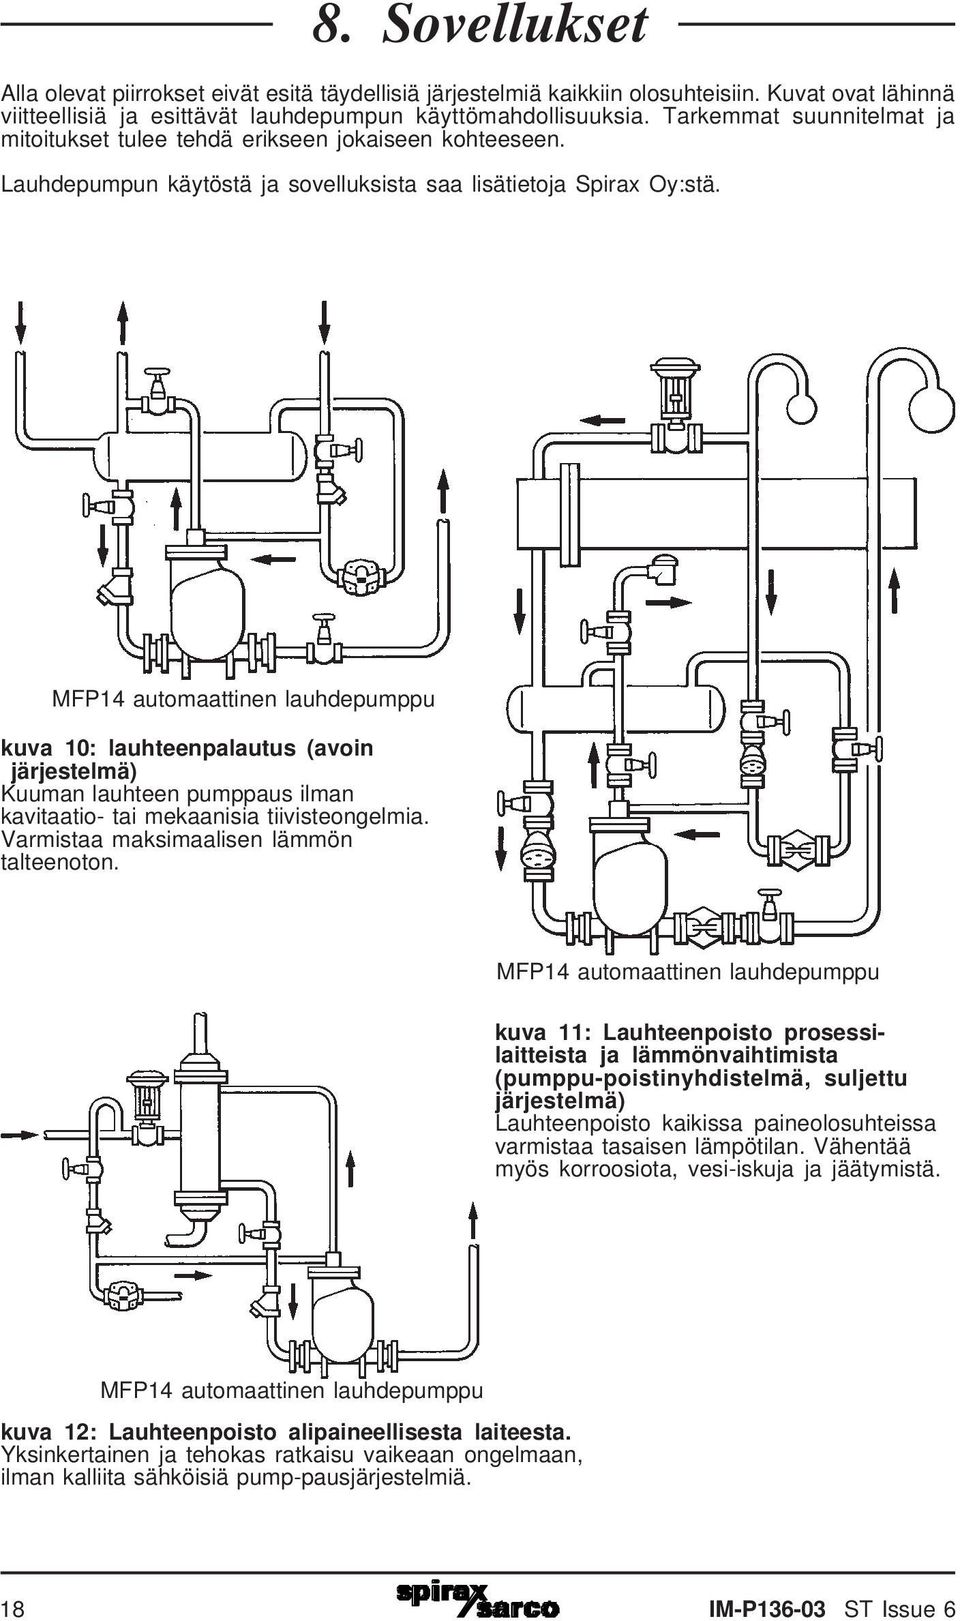 MFP14 automaattinen lauhdepumppu kuva 10: lauhteenpalautus (avoin järjestelmä) Kuuman lauhteen pumppaus ilman kavitaatio- tai mekaanisia tiivisteongelmia. Varmistaa maksimaalisen lämmön talteenoton.